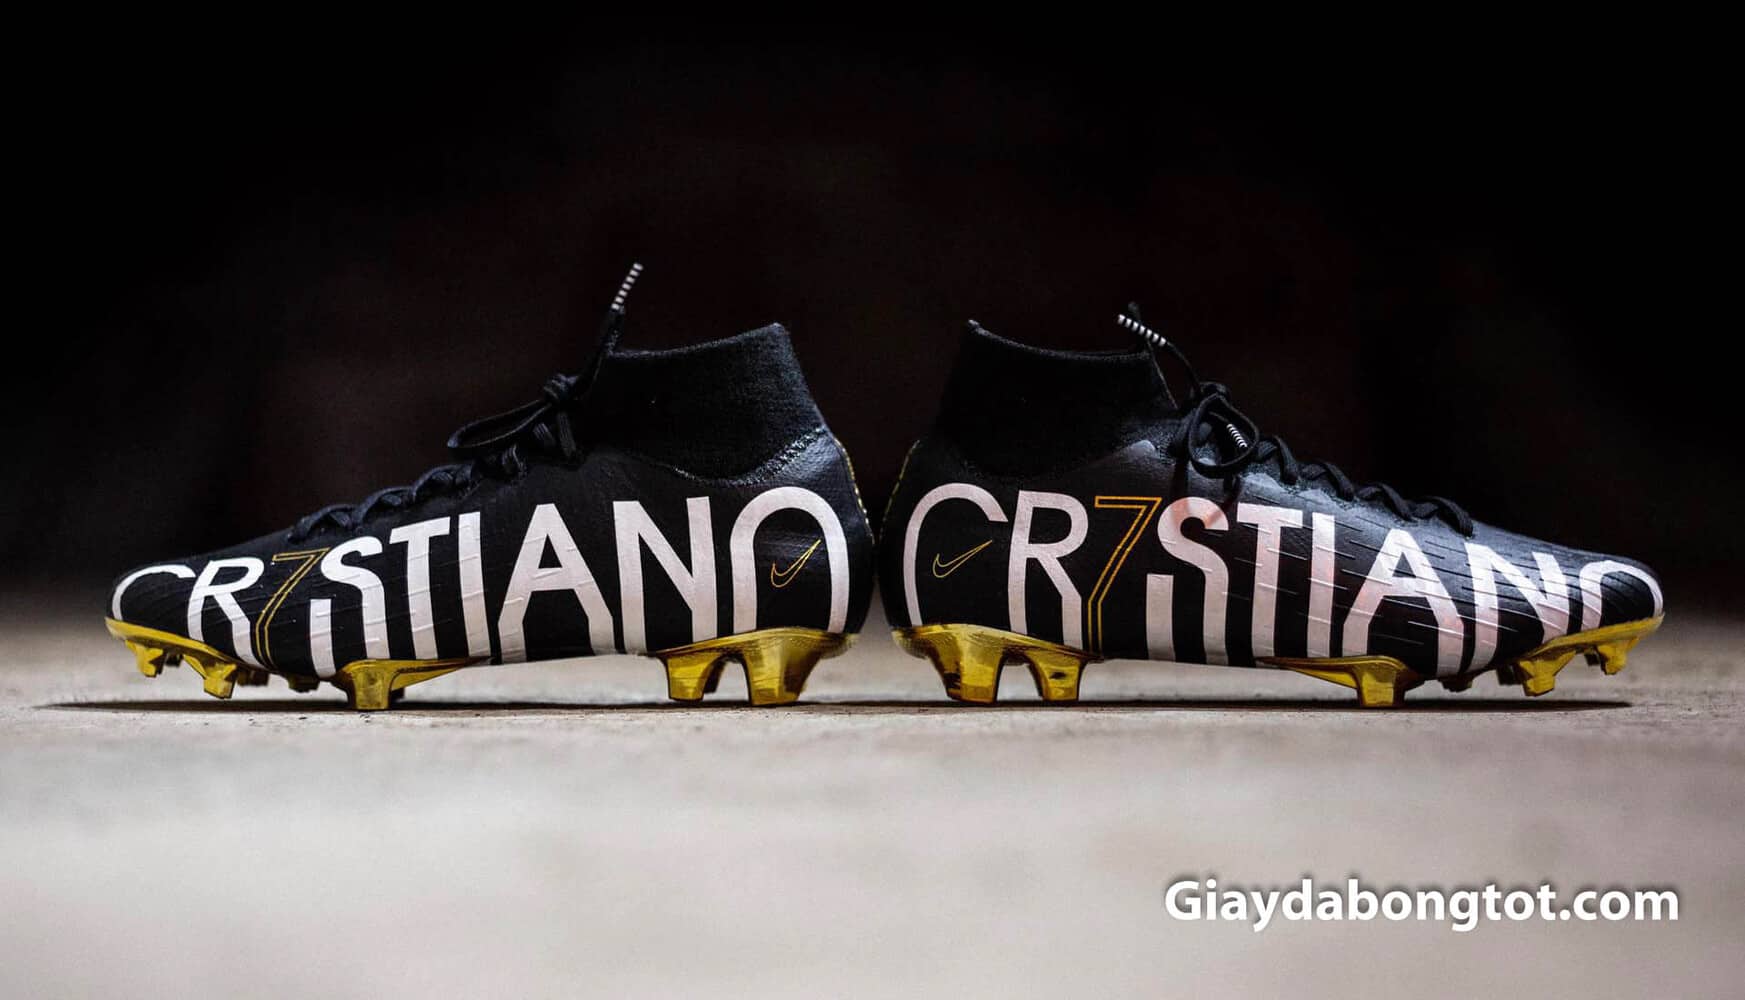 Đôi giày đá banh Nike cao cổ kỷ niệm 600 bàn thắng của Ronaldo CR7 với thiết kế độc đáo